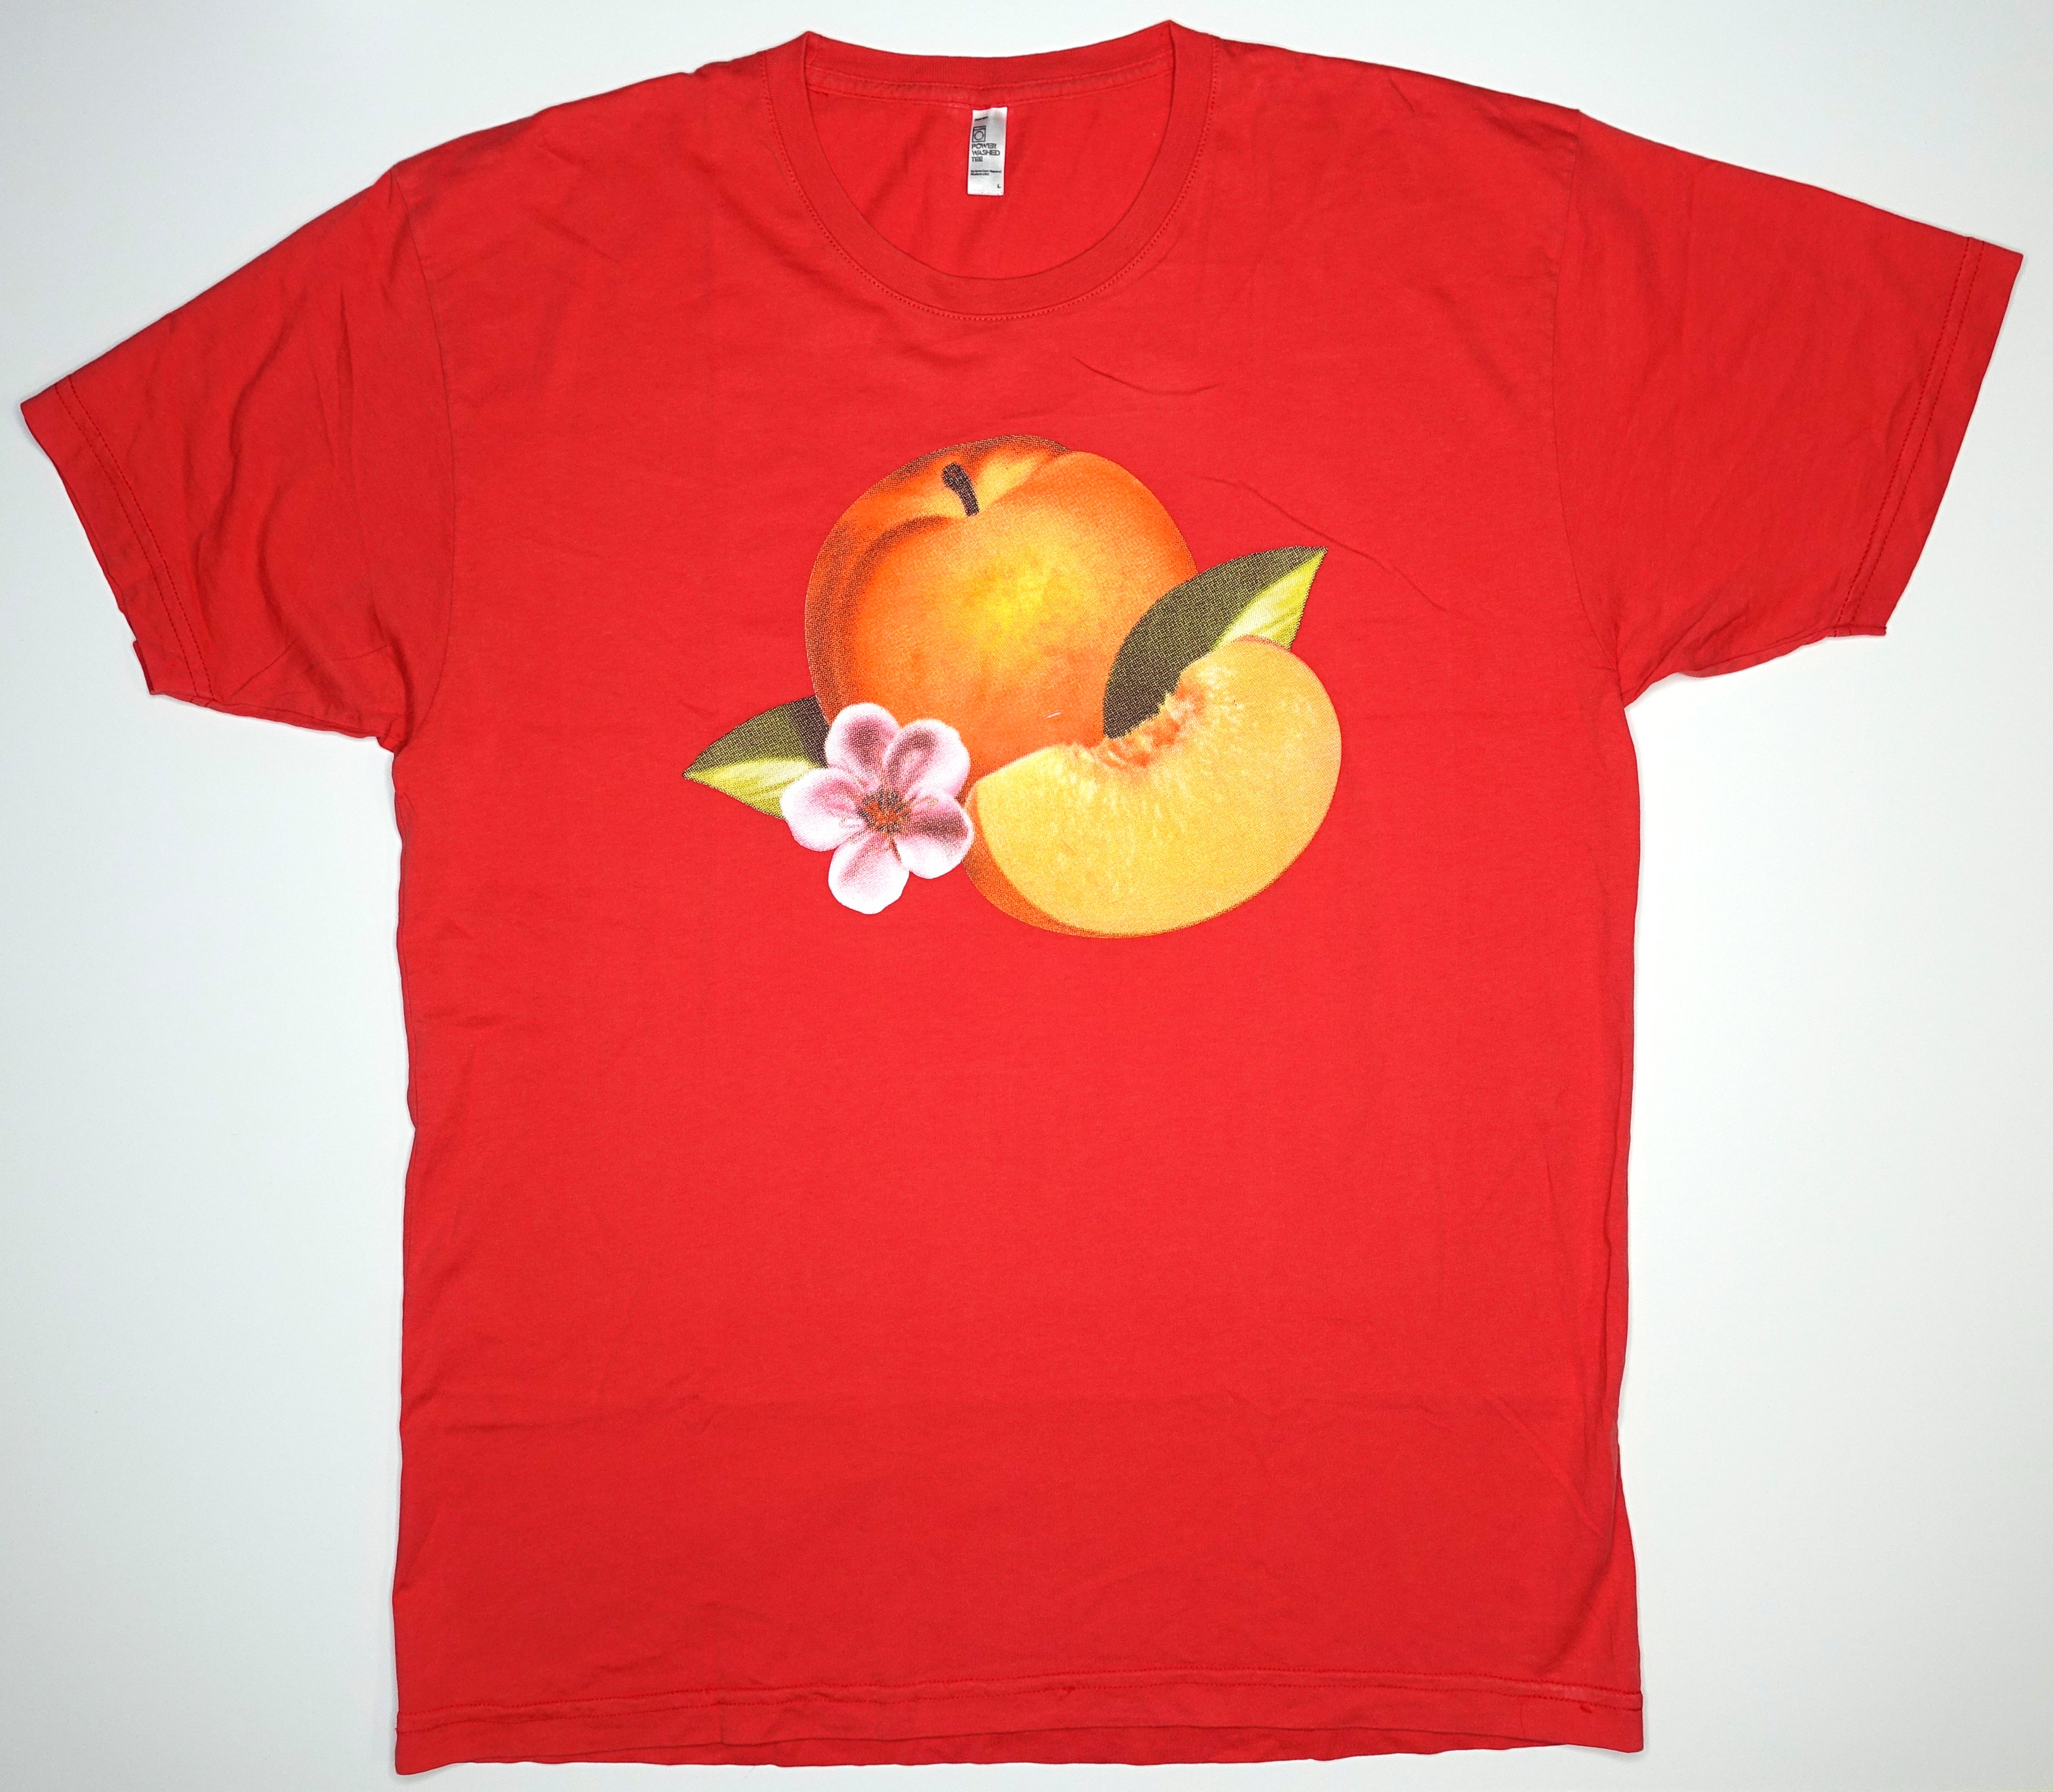 Phoenix - Bankrupt! 2013 Tour Shirt Size Large (Red)